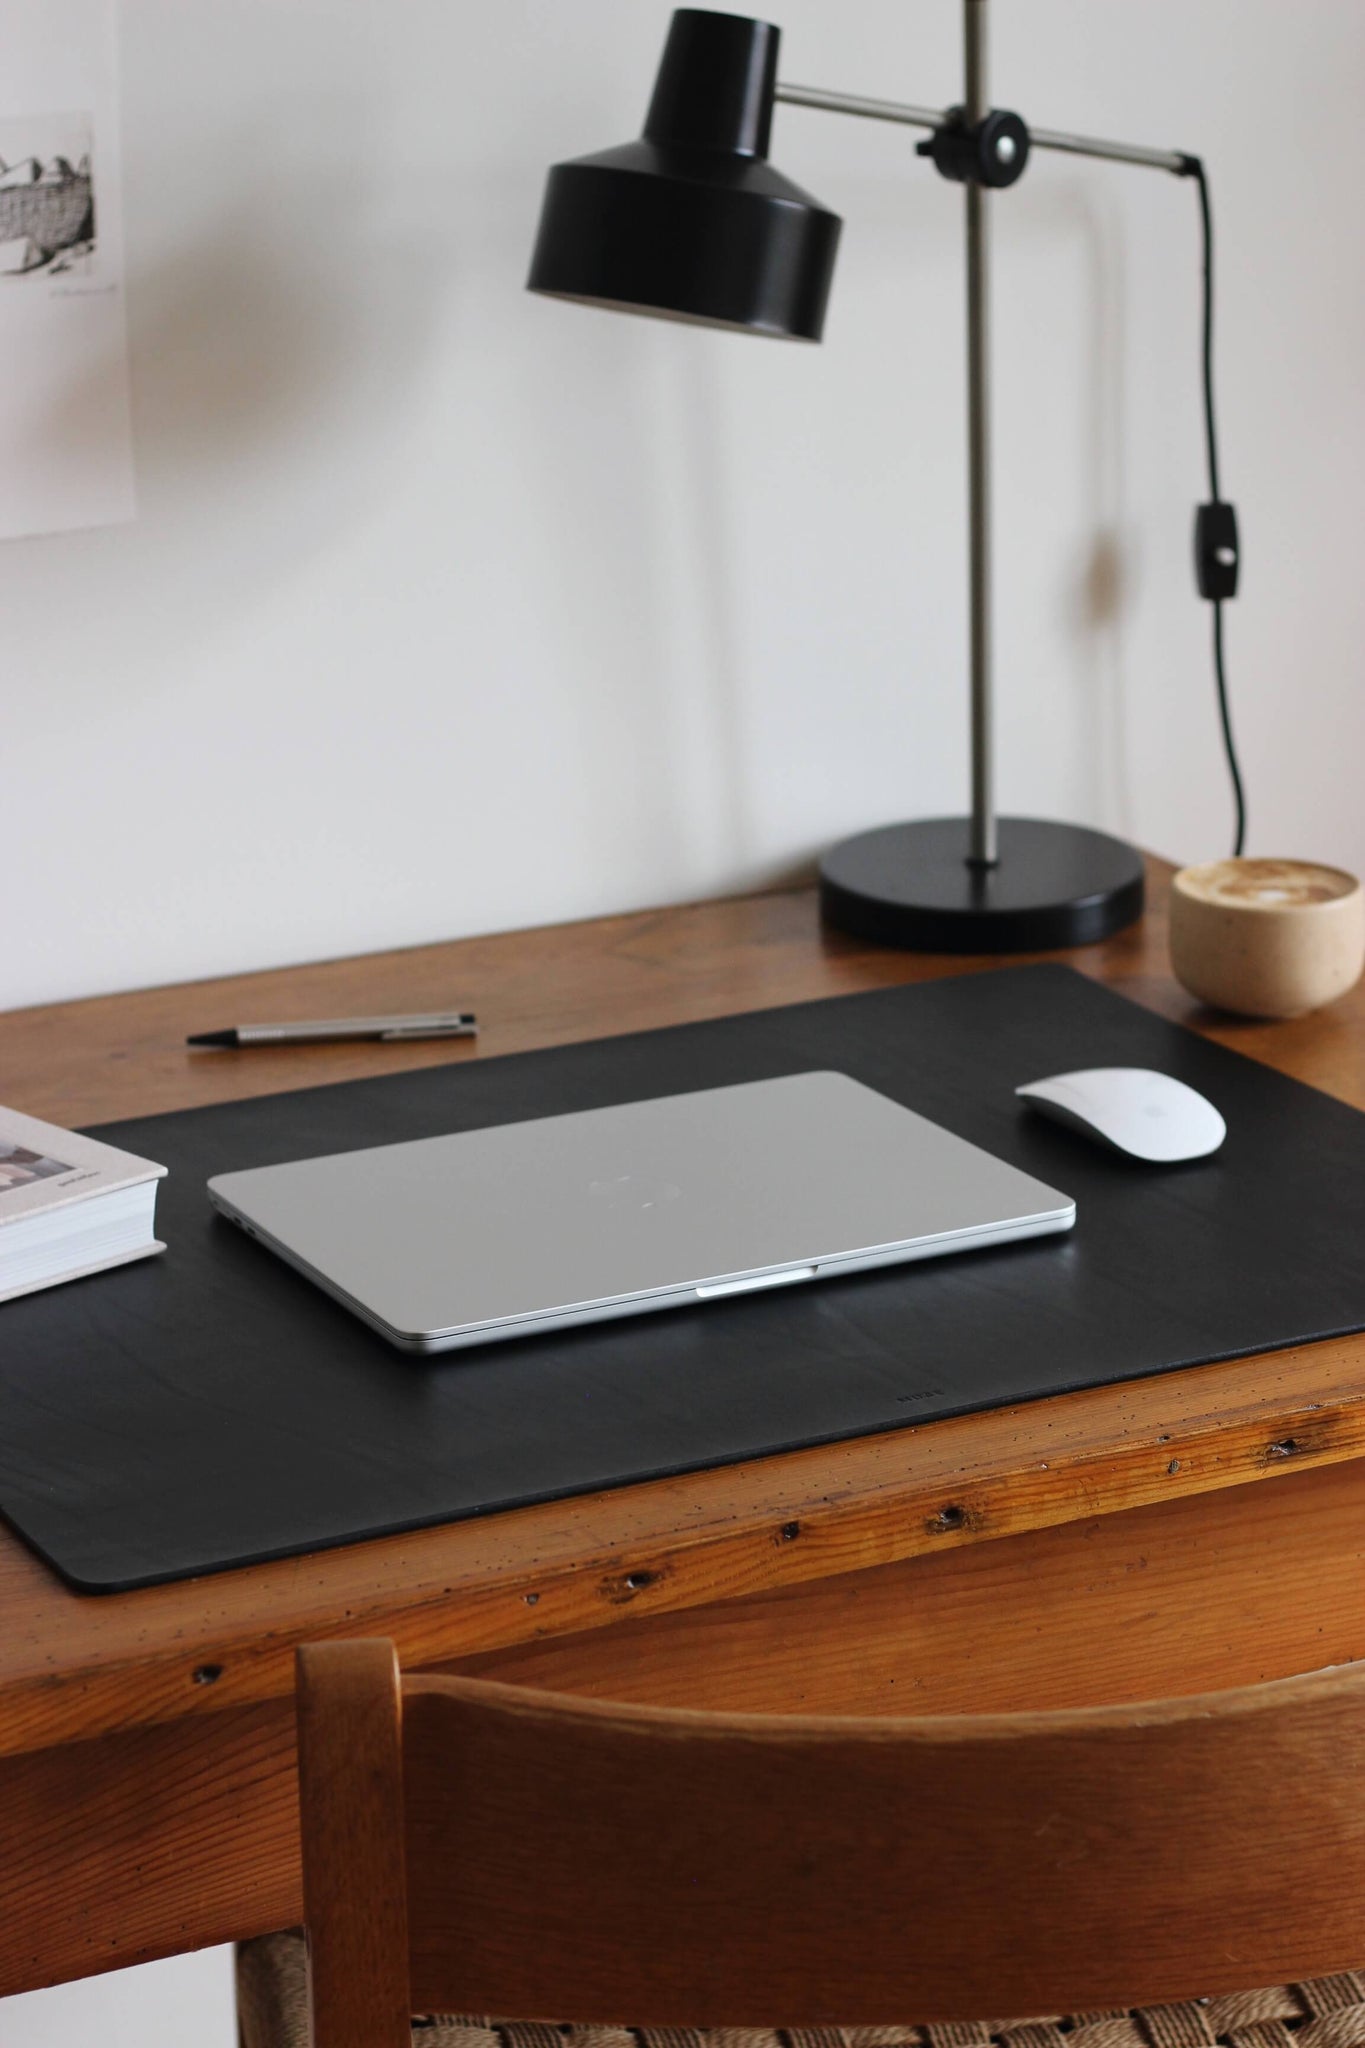 Seitliche Ansicht einer Leder Schreibtischunterlage in Schwarz auf einem Holzschreibtisch und darauf liegt ein zugeklapptes MacBook und eine Maus.